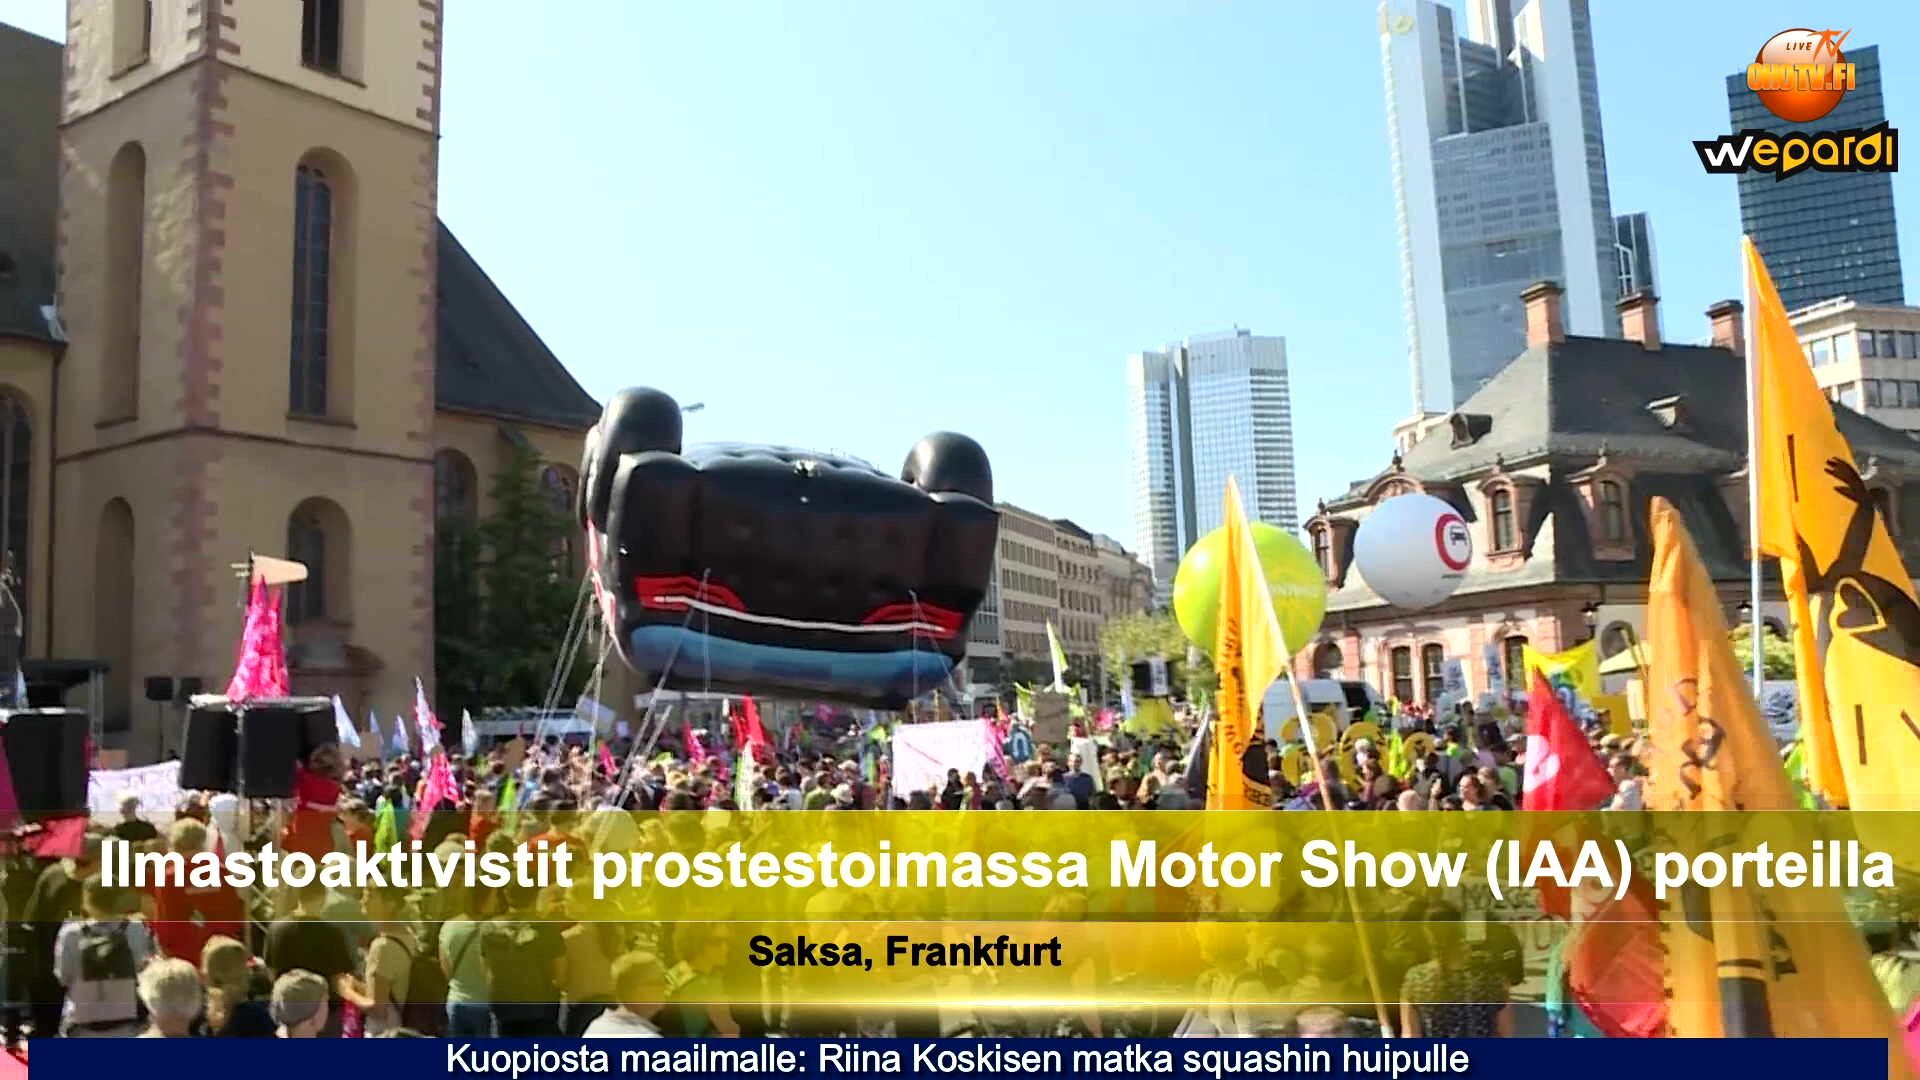 Tuhannet ympäristöaktivistit protestoivat International Motor Show (IAA) -porttien ulkopuolella.